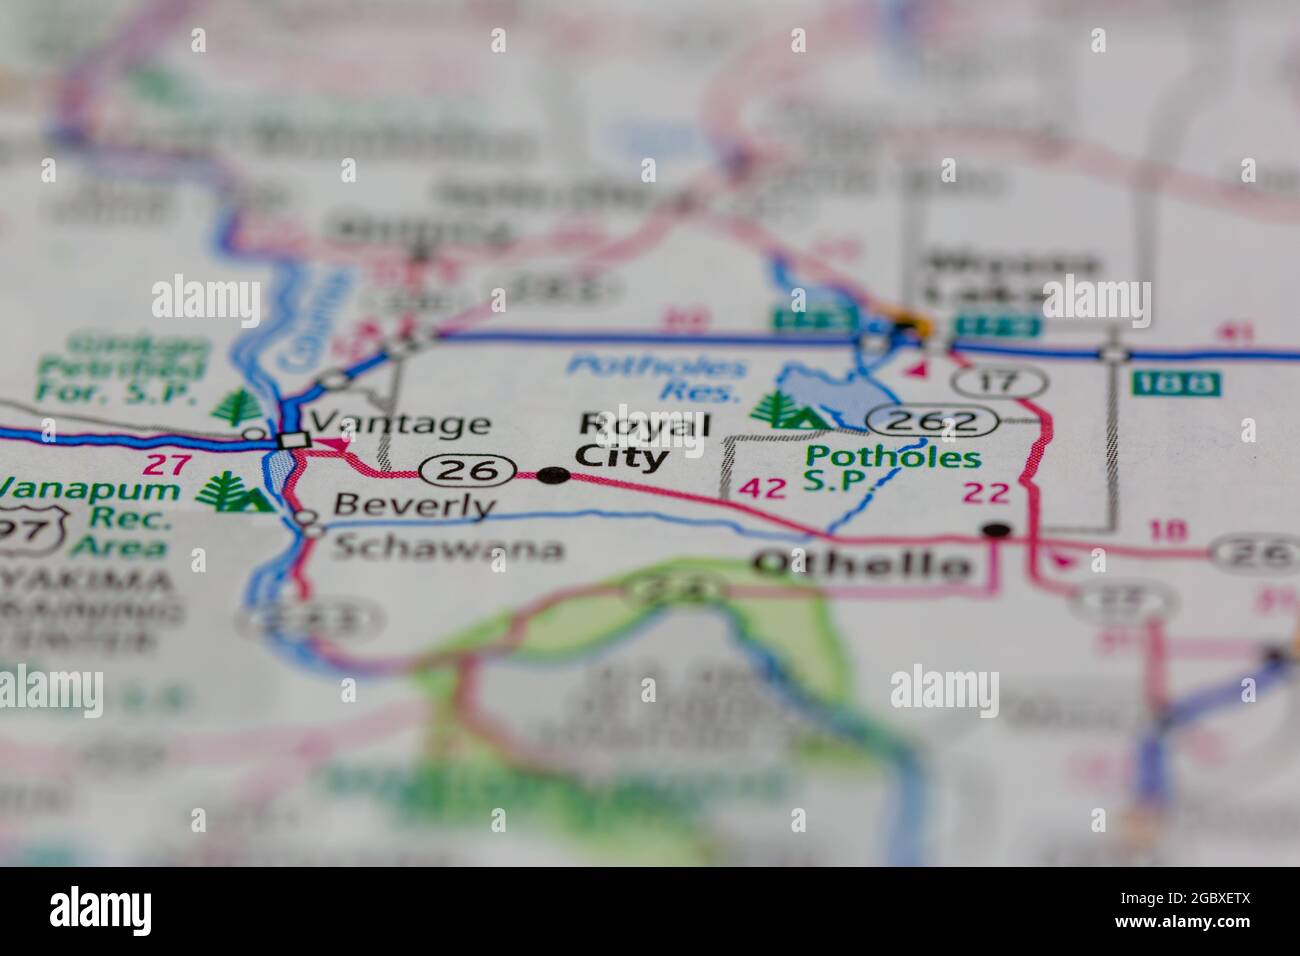 La Royal City Washington state USA viene visualizzata su una mappa stradale o su una mappa geografica Foto Stock